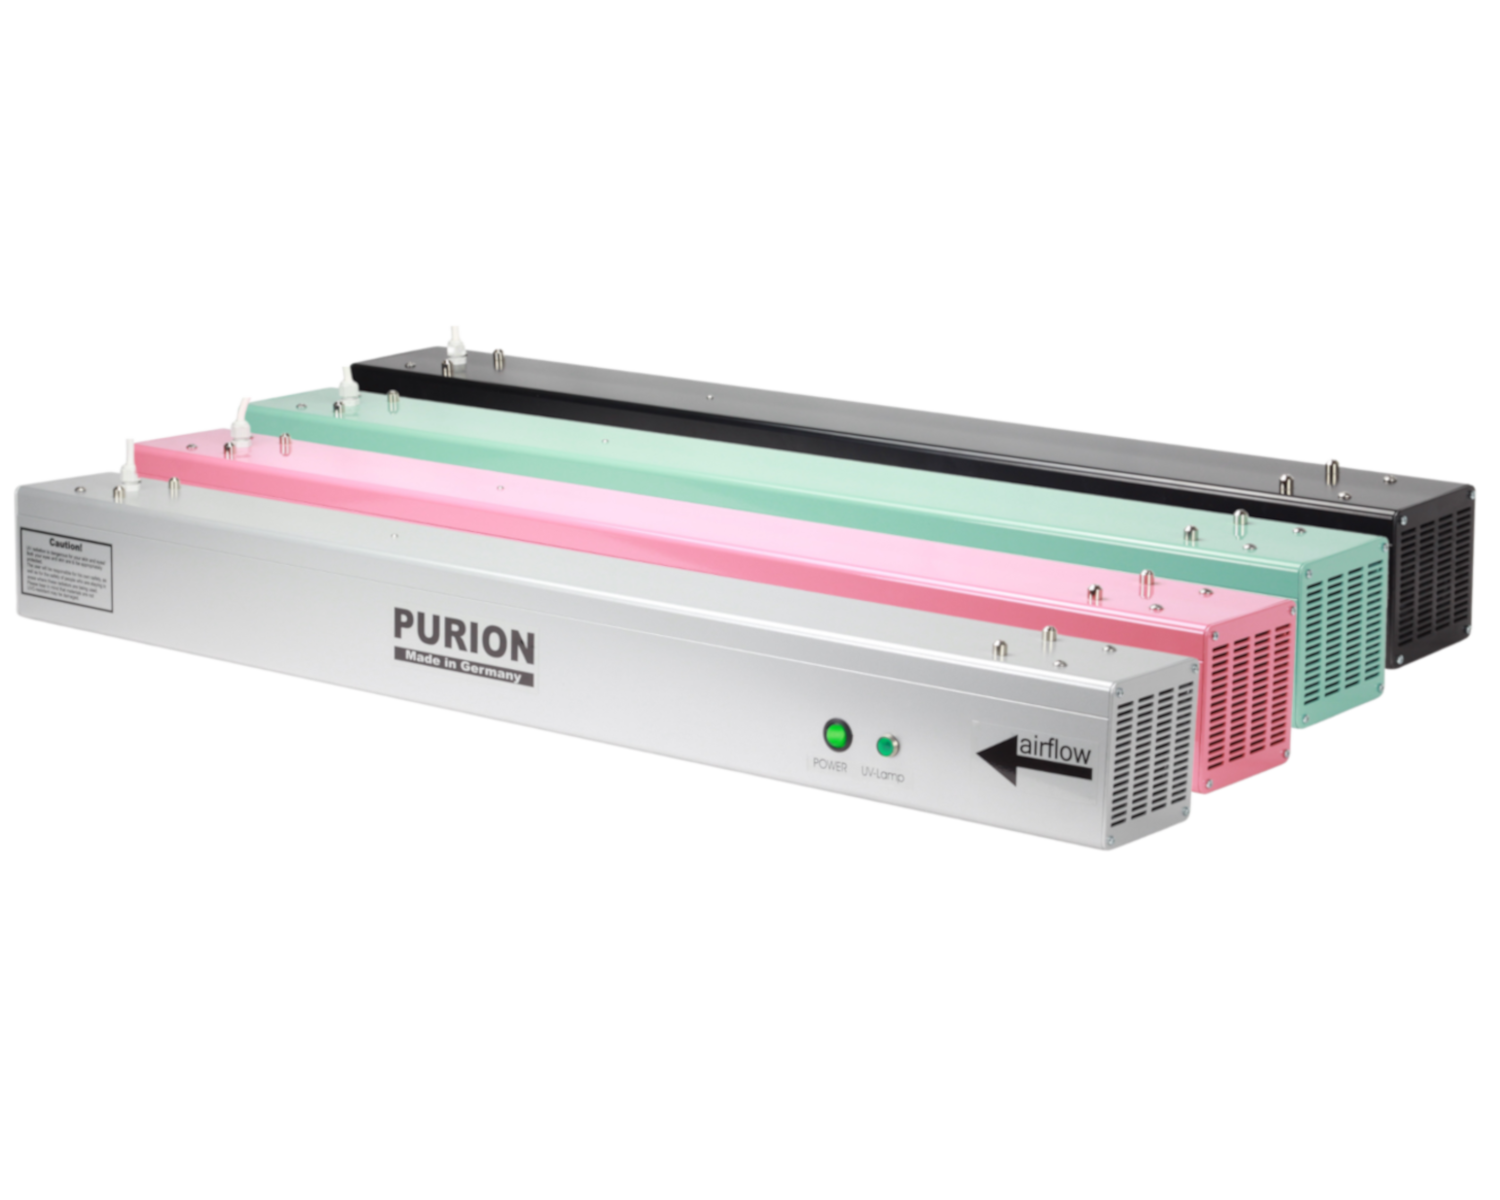 Die AIRPURION 90 active Basic der PURION GmbH verwendet eine UV-C-Lampe zur Desinfektion von Luft und Oberflächen.